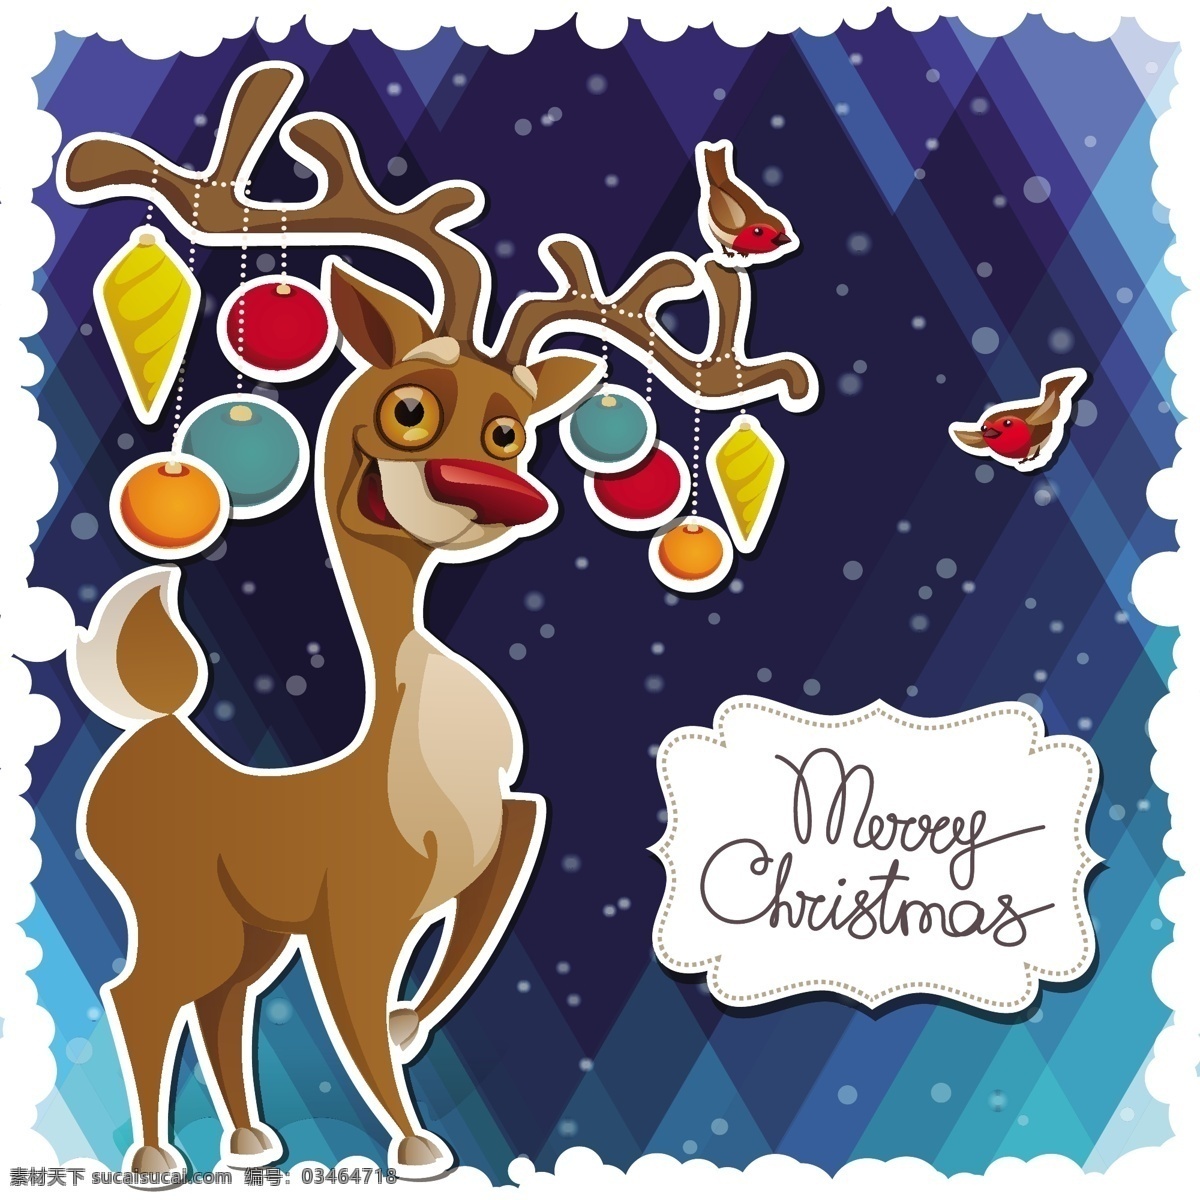 圣诞节 麋鹿 卡片 圣诞贺卡 圣诞节插画 圣诞节海报 圣诞节装饰 圣诞鹿 手绘 新年背景 2015 年 新年 羊年 节日素材